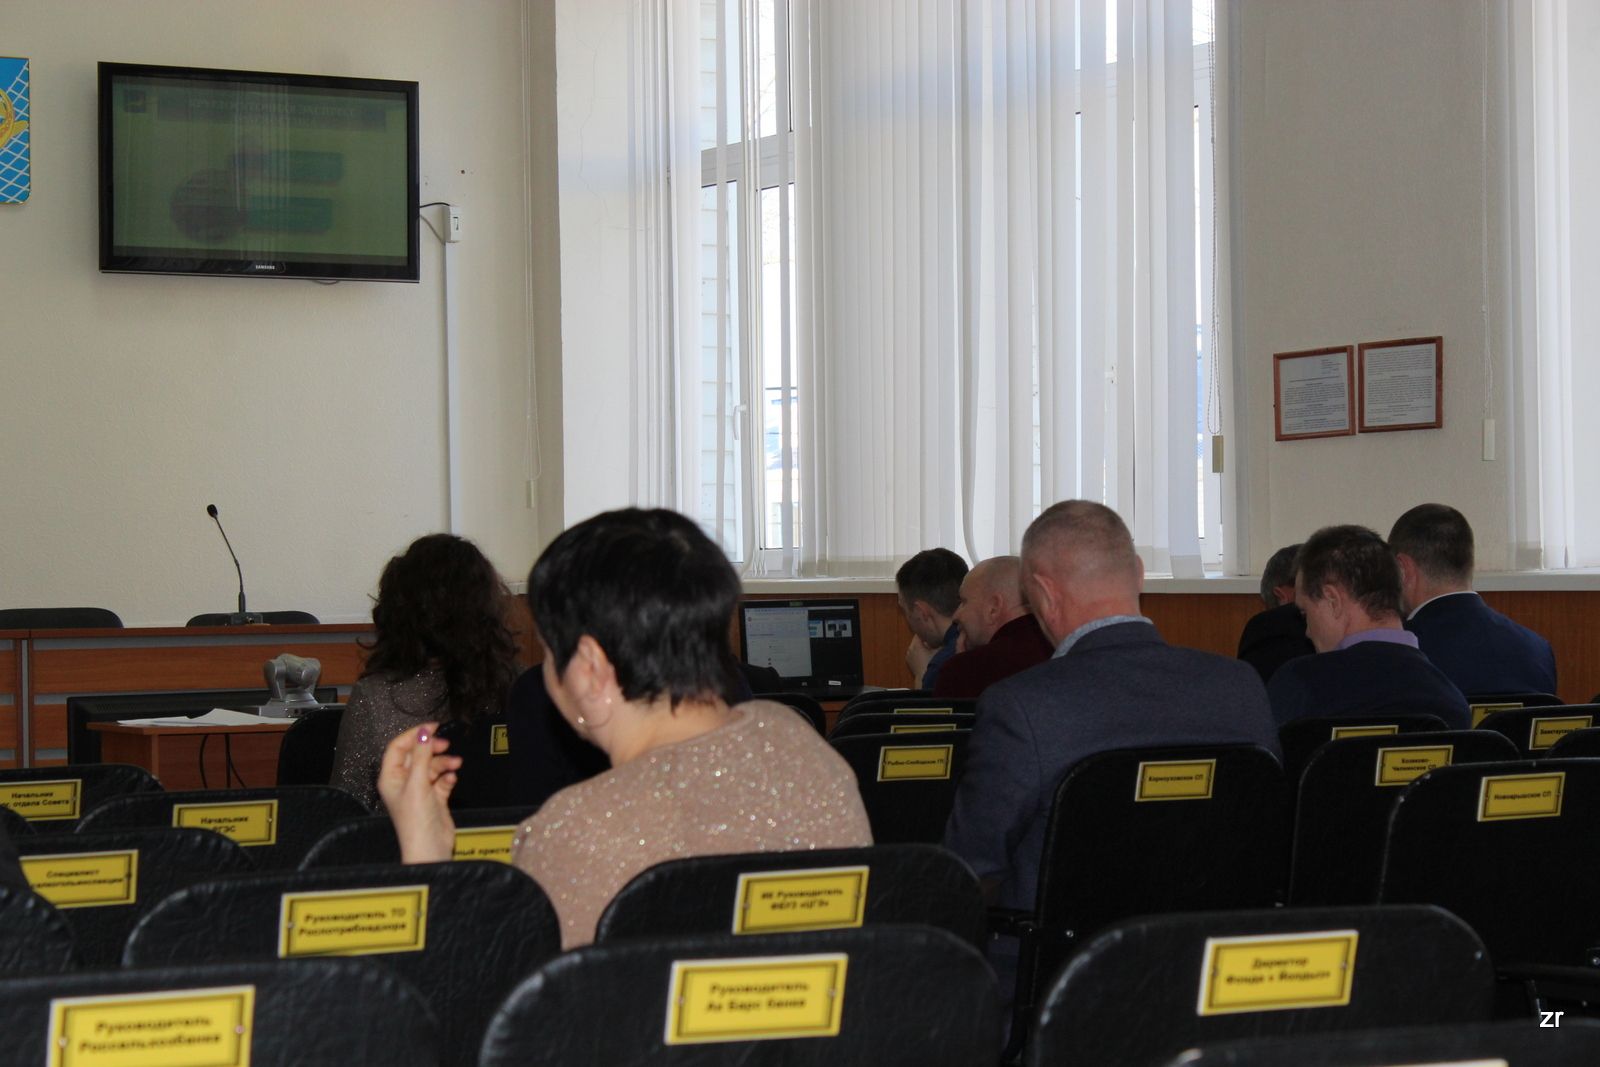 В Рыбно-Слободском муниципальном районе провели заседание антинаркотической комиссии. Какие вопросы там рассмотрели